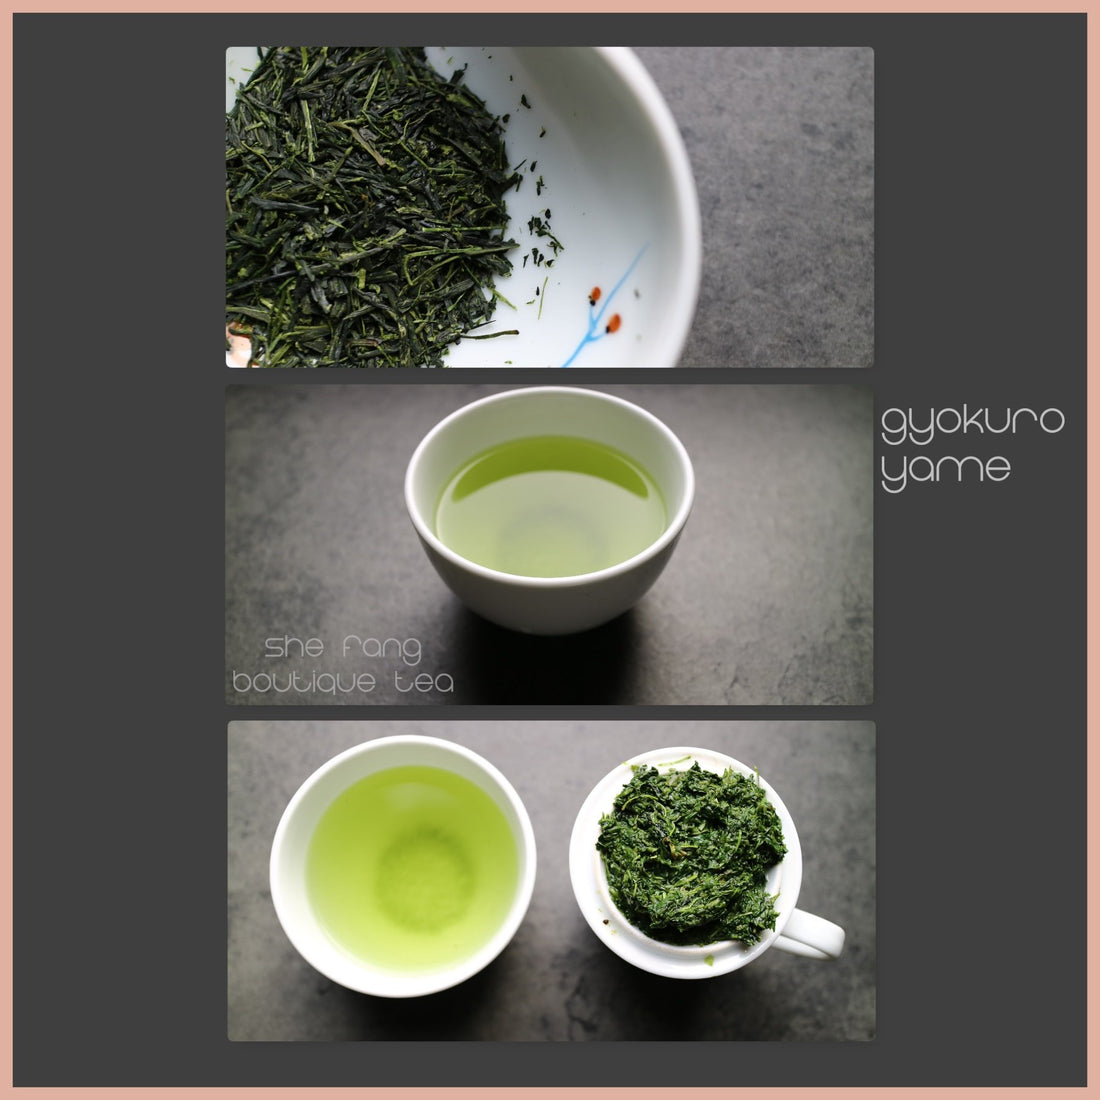 Tea sourcing batch n.239 - Teas from Japan - Gyokuro Yame - She Fang Boutique Tea